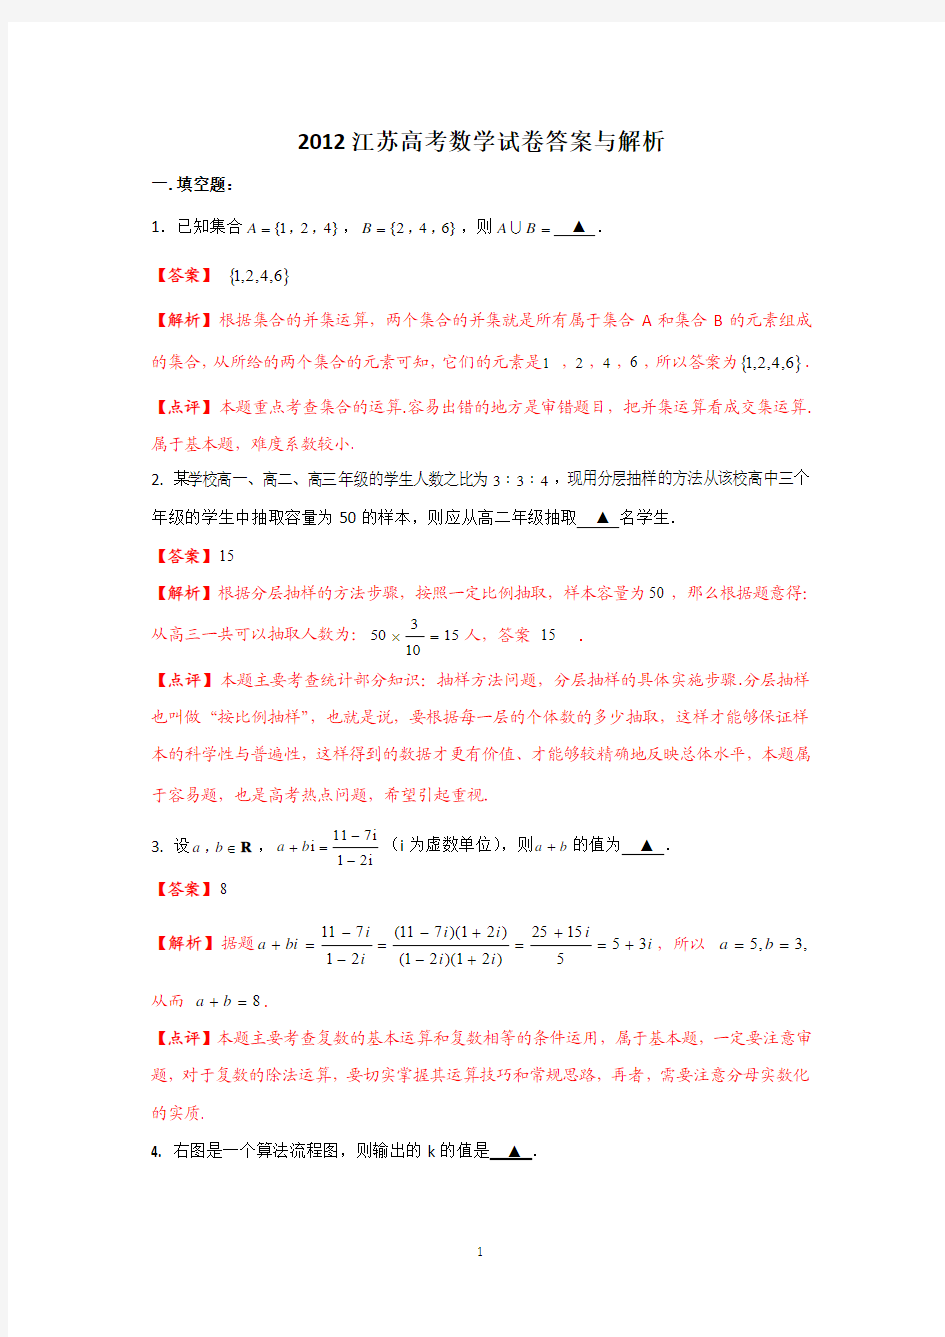 2012年高考真题——数学(江苏卷)解析版(1)